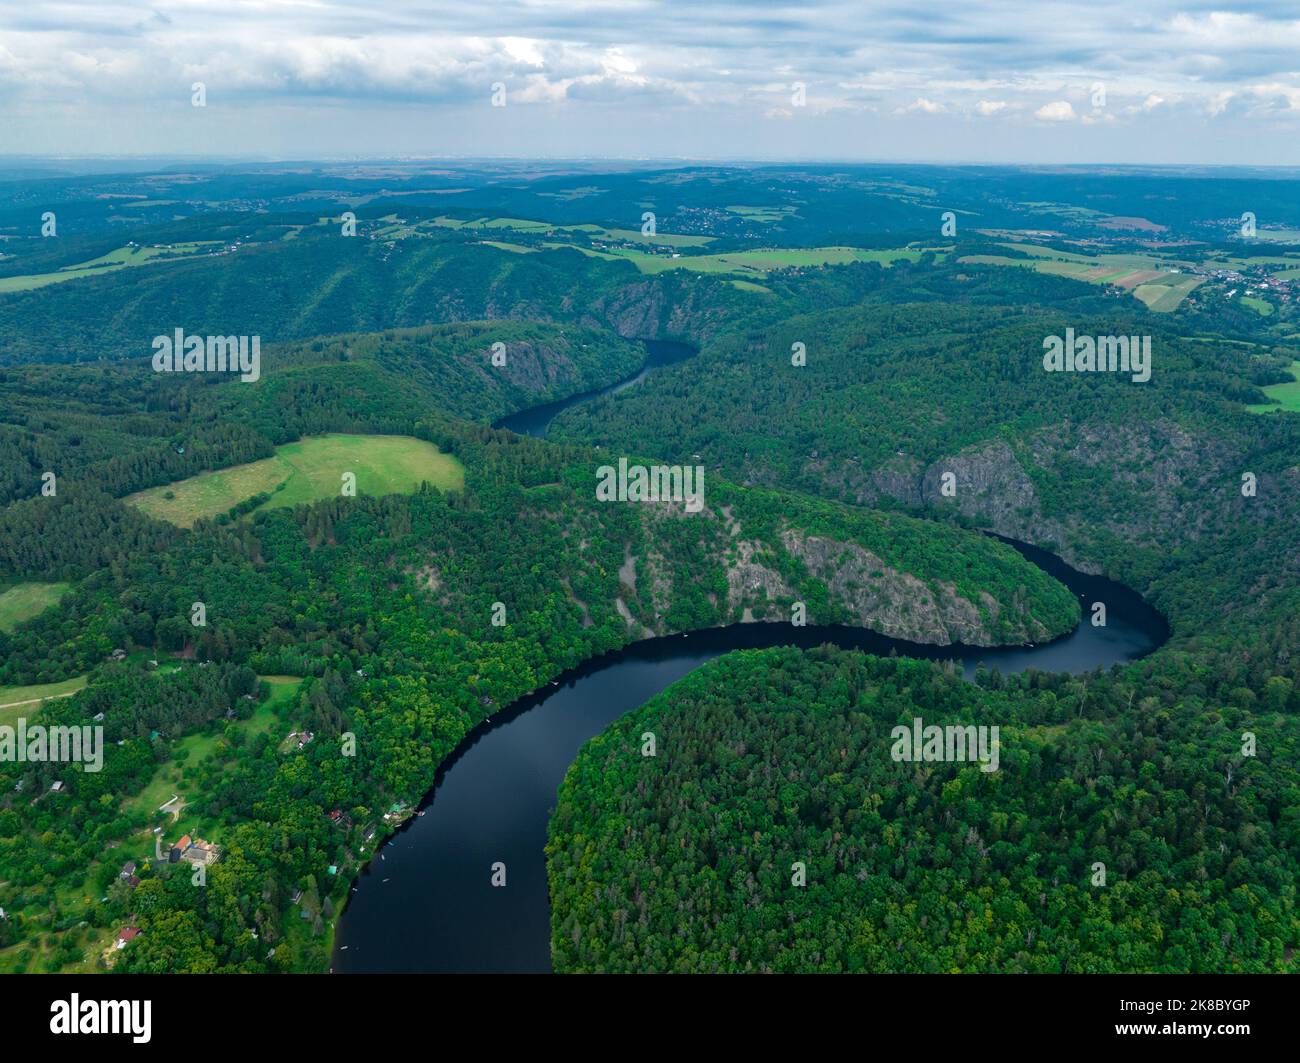 Tschechien. Luftaufnahme der Moldau von Tschechien, Krnany, Europa. Mittelböhmen, Tschechische Republik. Blick von oben in der Nähe von Vyhlidka Maj Aussichtspunkt. Stockfoto